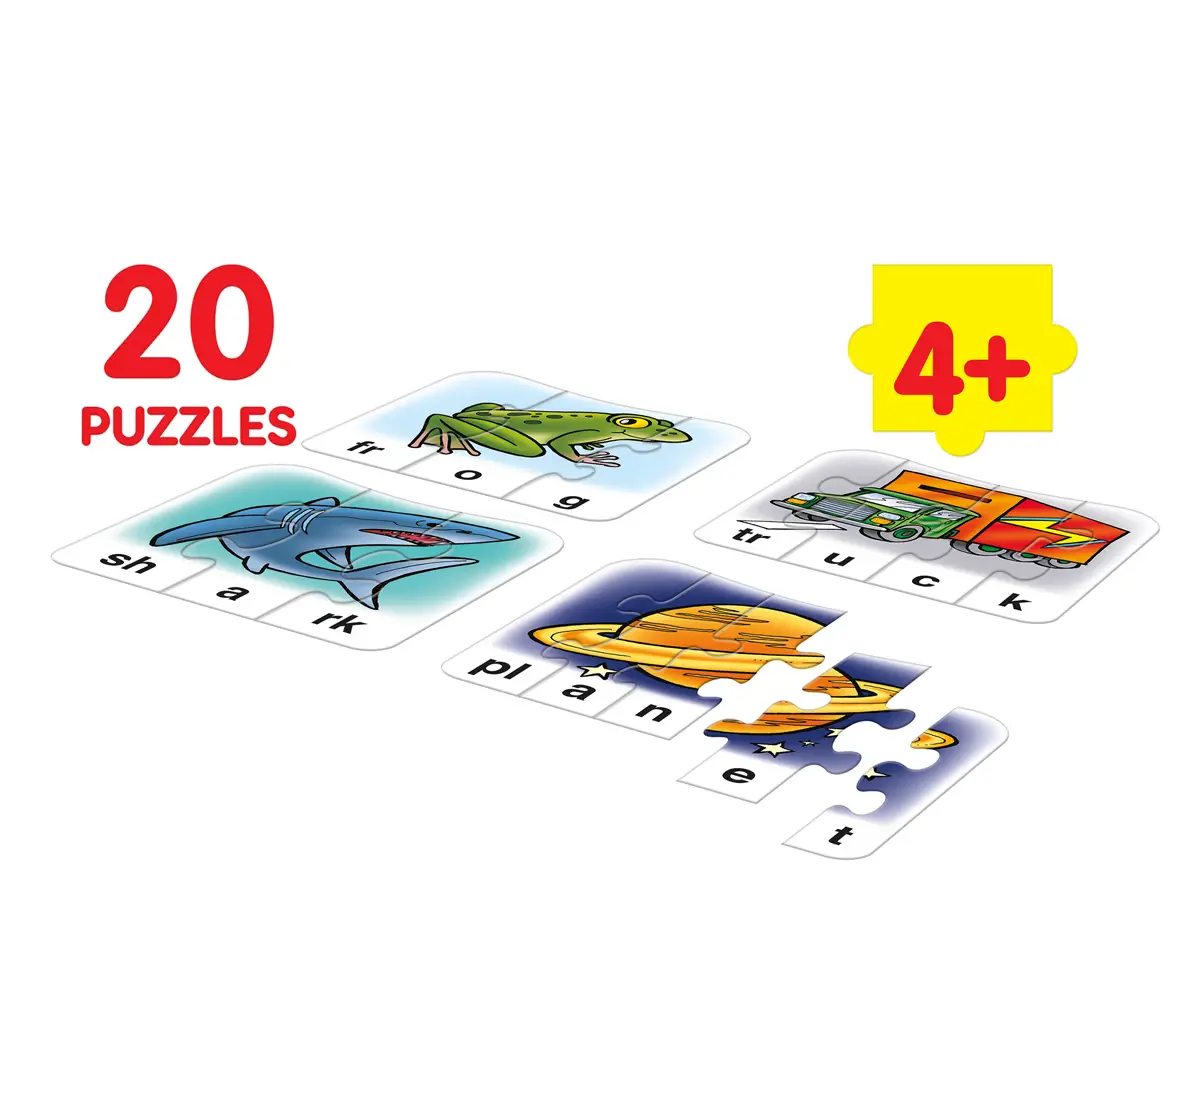 Frank More Play n Spell Floor Puzzles Multicolor 4Y+